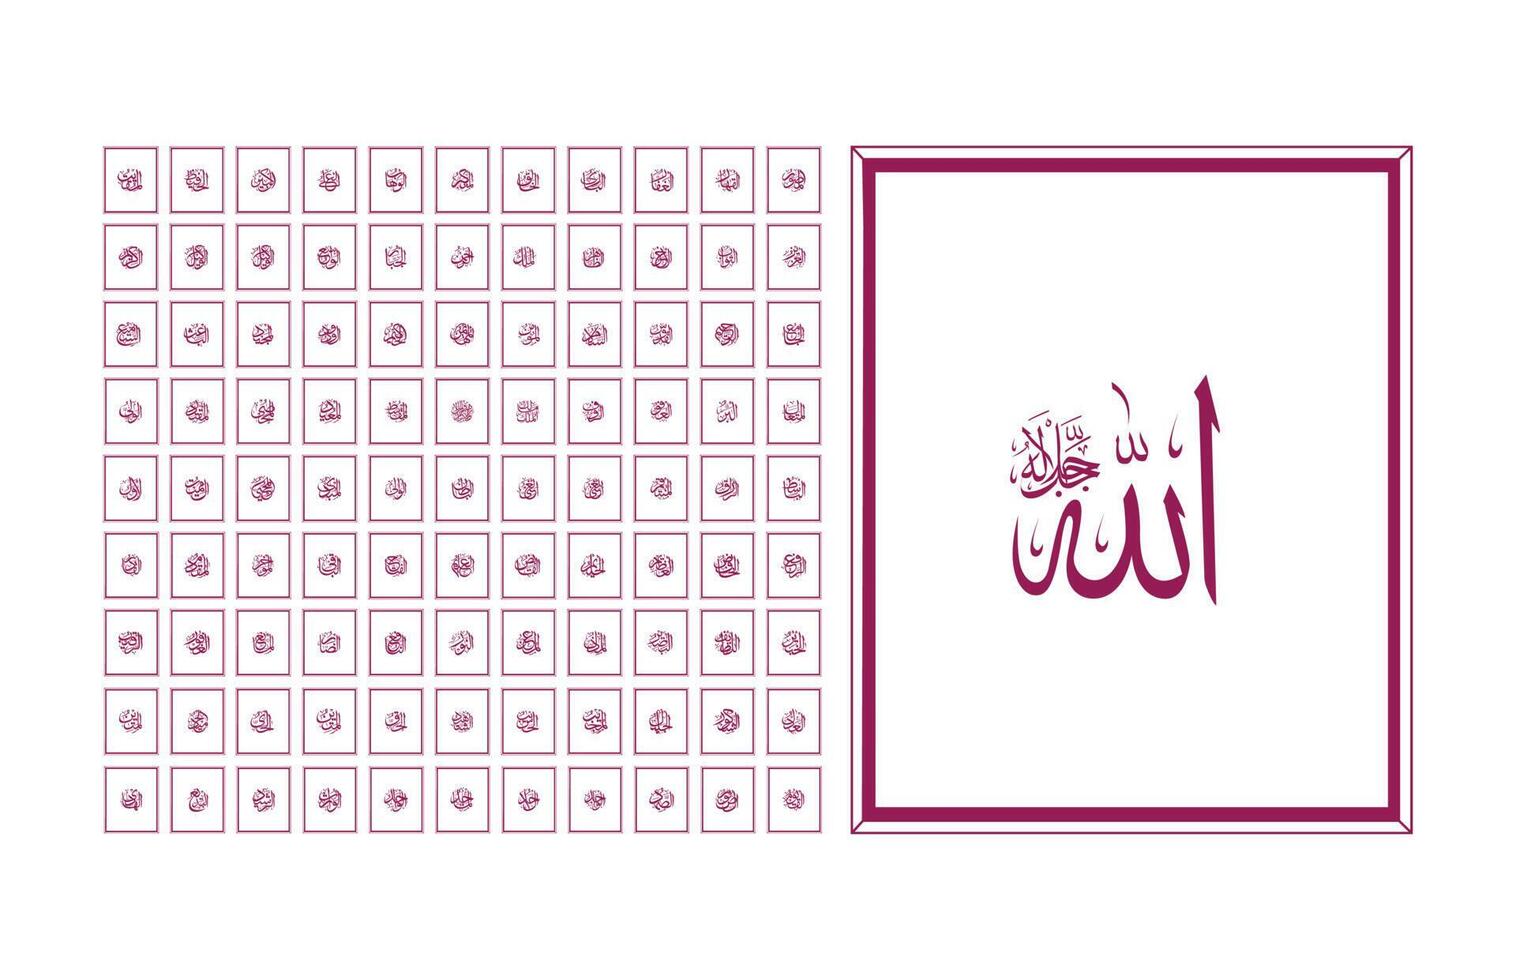 99 des noms de Allah dans arabe calligraphie style avec cadres vecteur